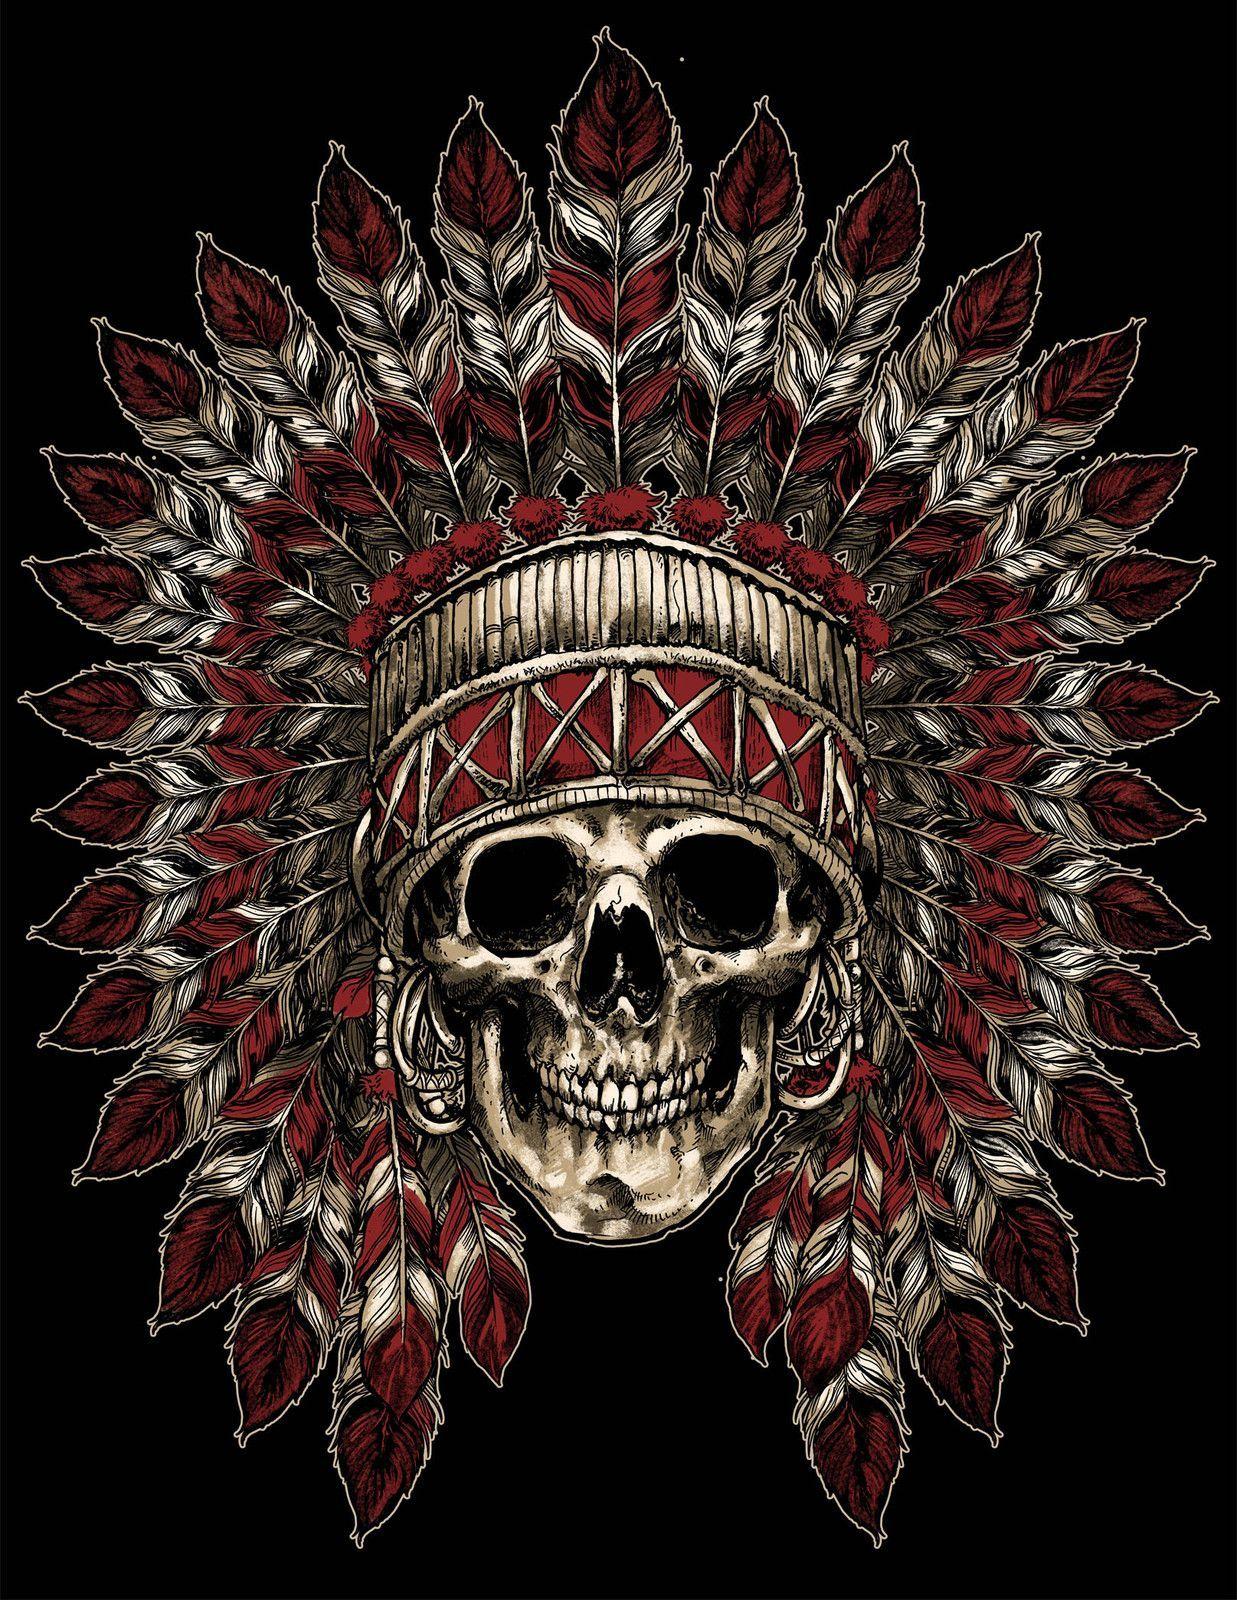 Indian Headdress Skull Tattoo by Ben Lucas on Behance